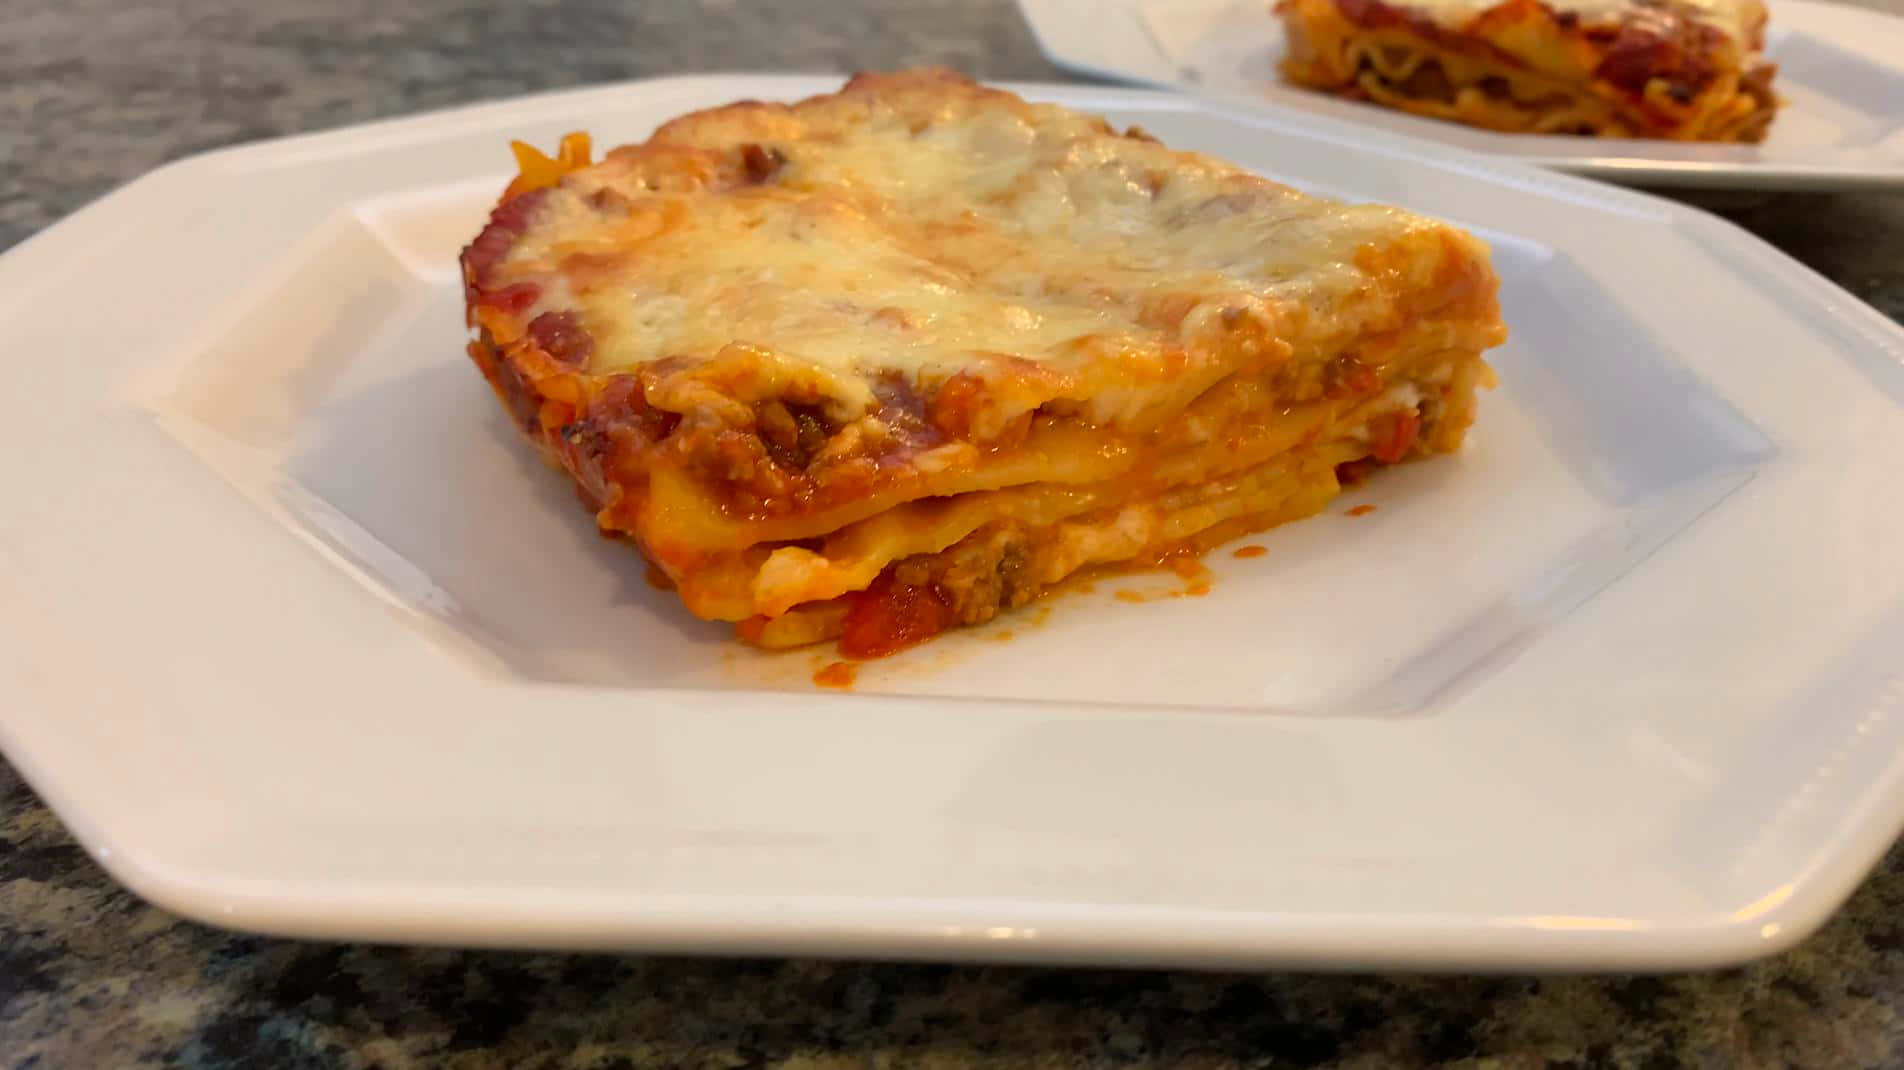 Flavorful Italian Cuisine - Lasagna Alla Bolognese Wallpaper